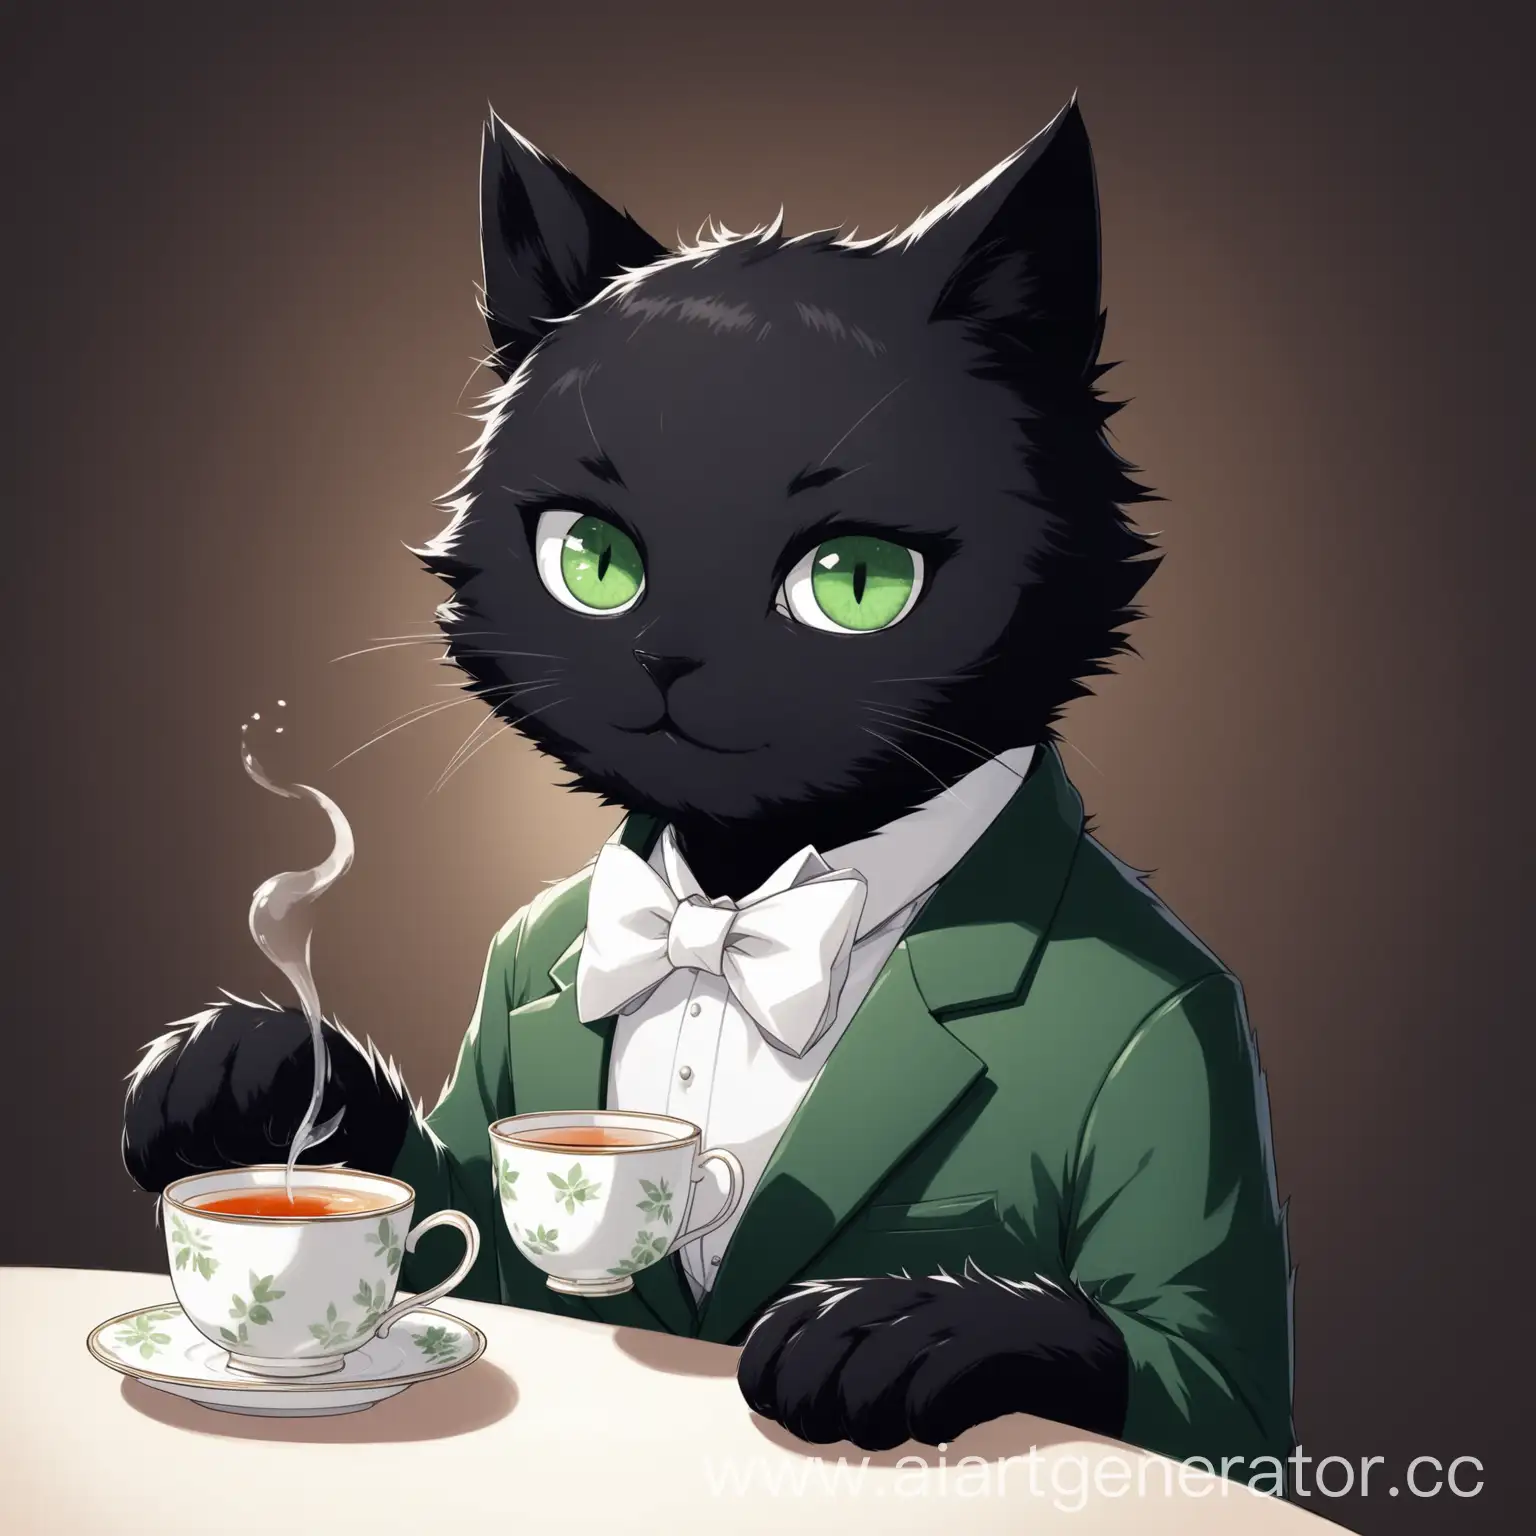 Черный фурри кот, белое пятно на правом глазу, белый галстук бабочка на груди, держит чашку чая, глаза темно-зеленого цвета